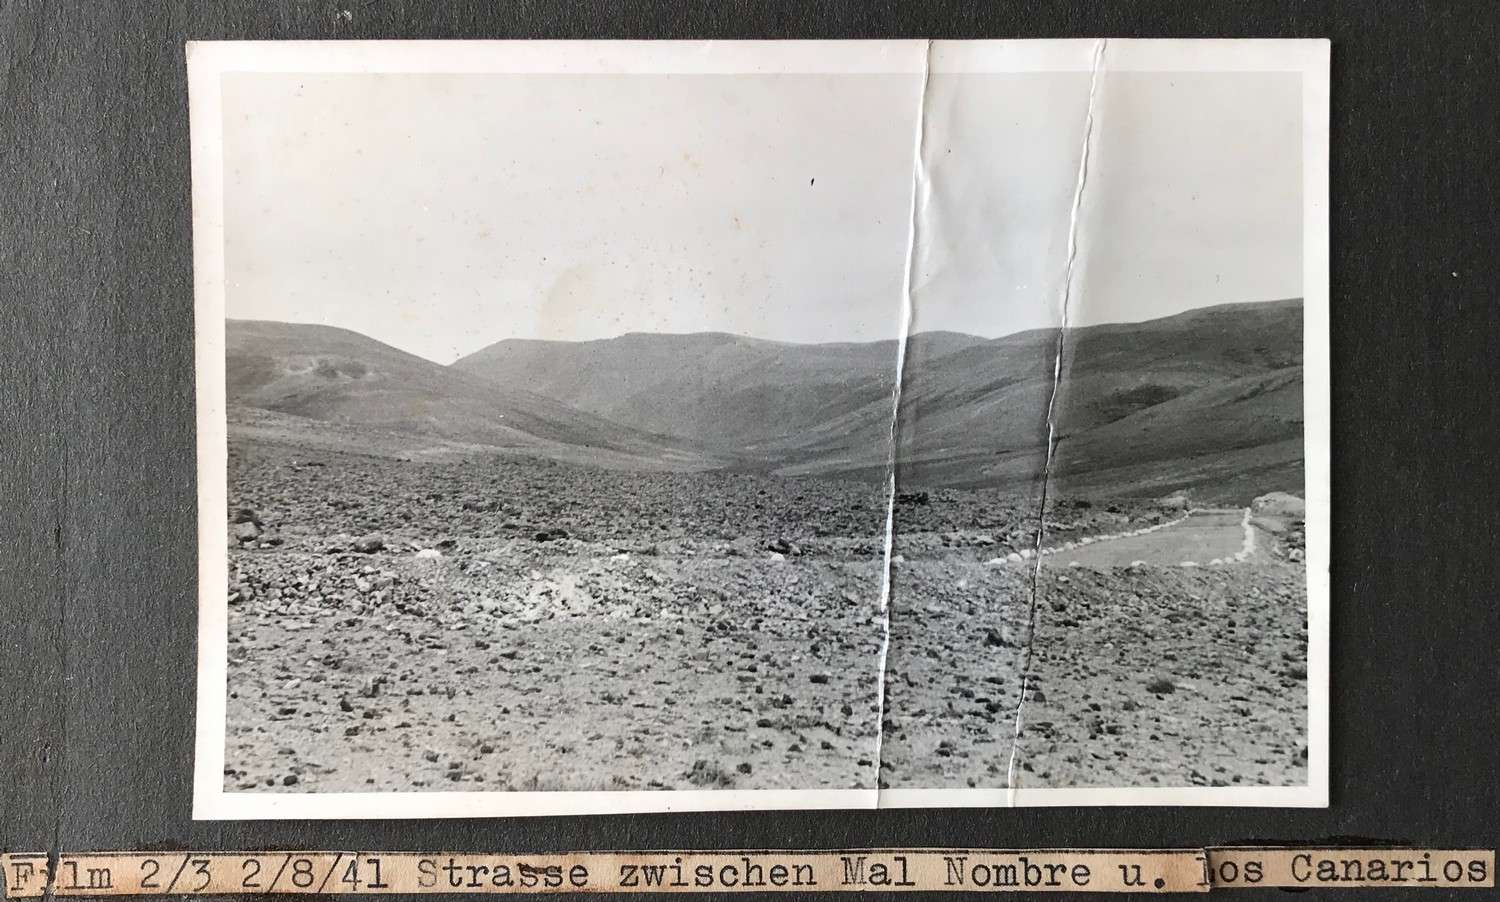 Carretera Mal Nombre Los Canarios 1941